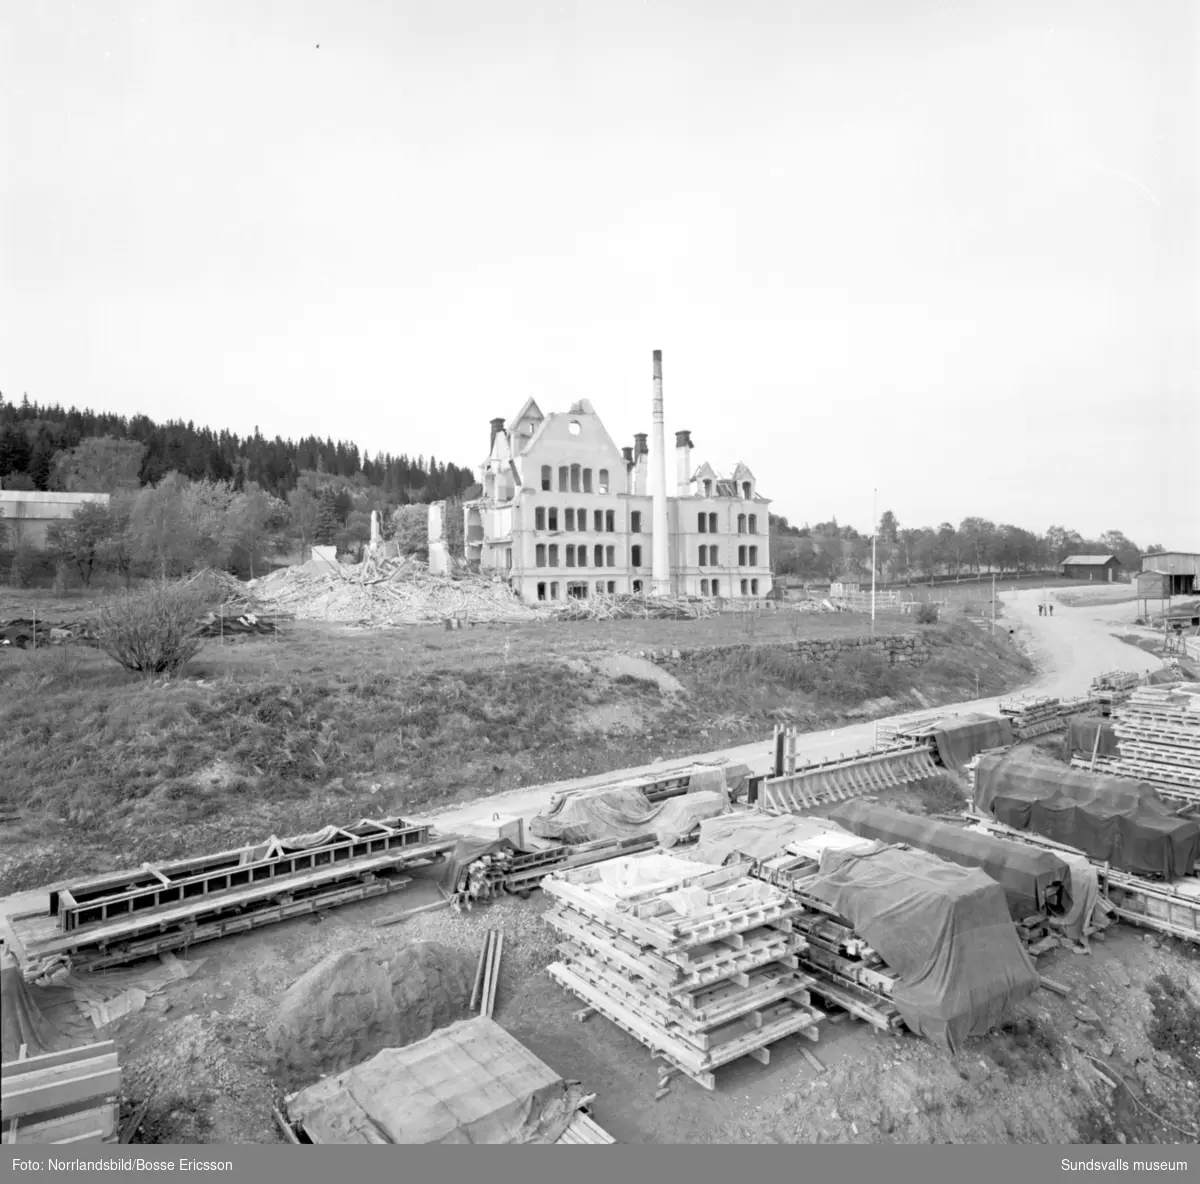 Sprängning av Birstahemmet i Skön, även kallat "Fattigpalatset". Ålderdomshem och fattiggård, senare ersatt av Solhaga. Huset uppfört 1891, rivet 1964. Arkitekt Emil Befwe.